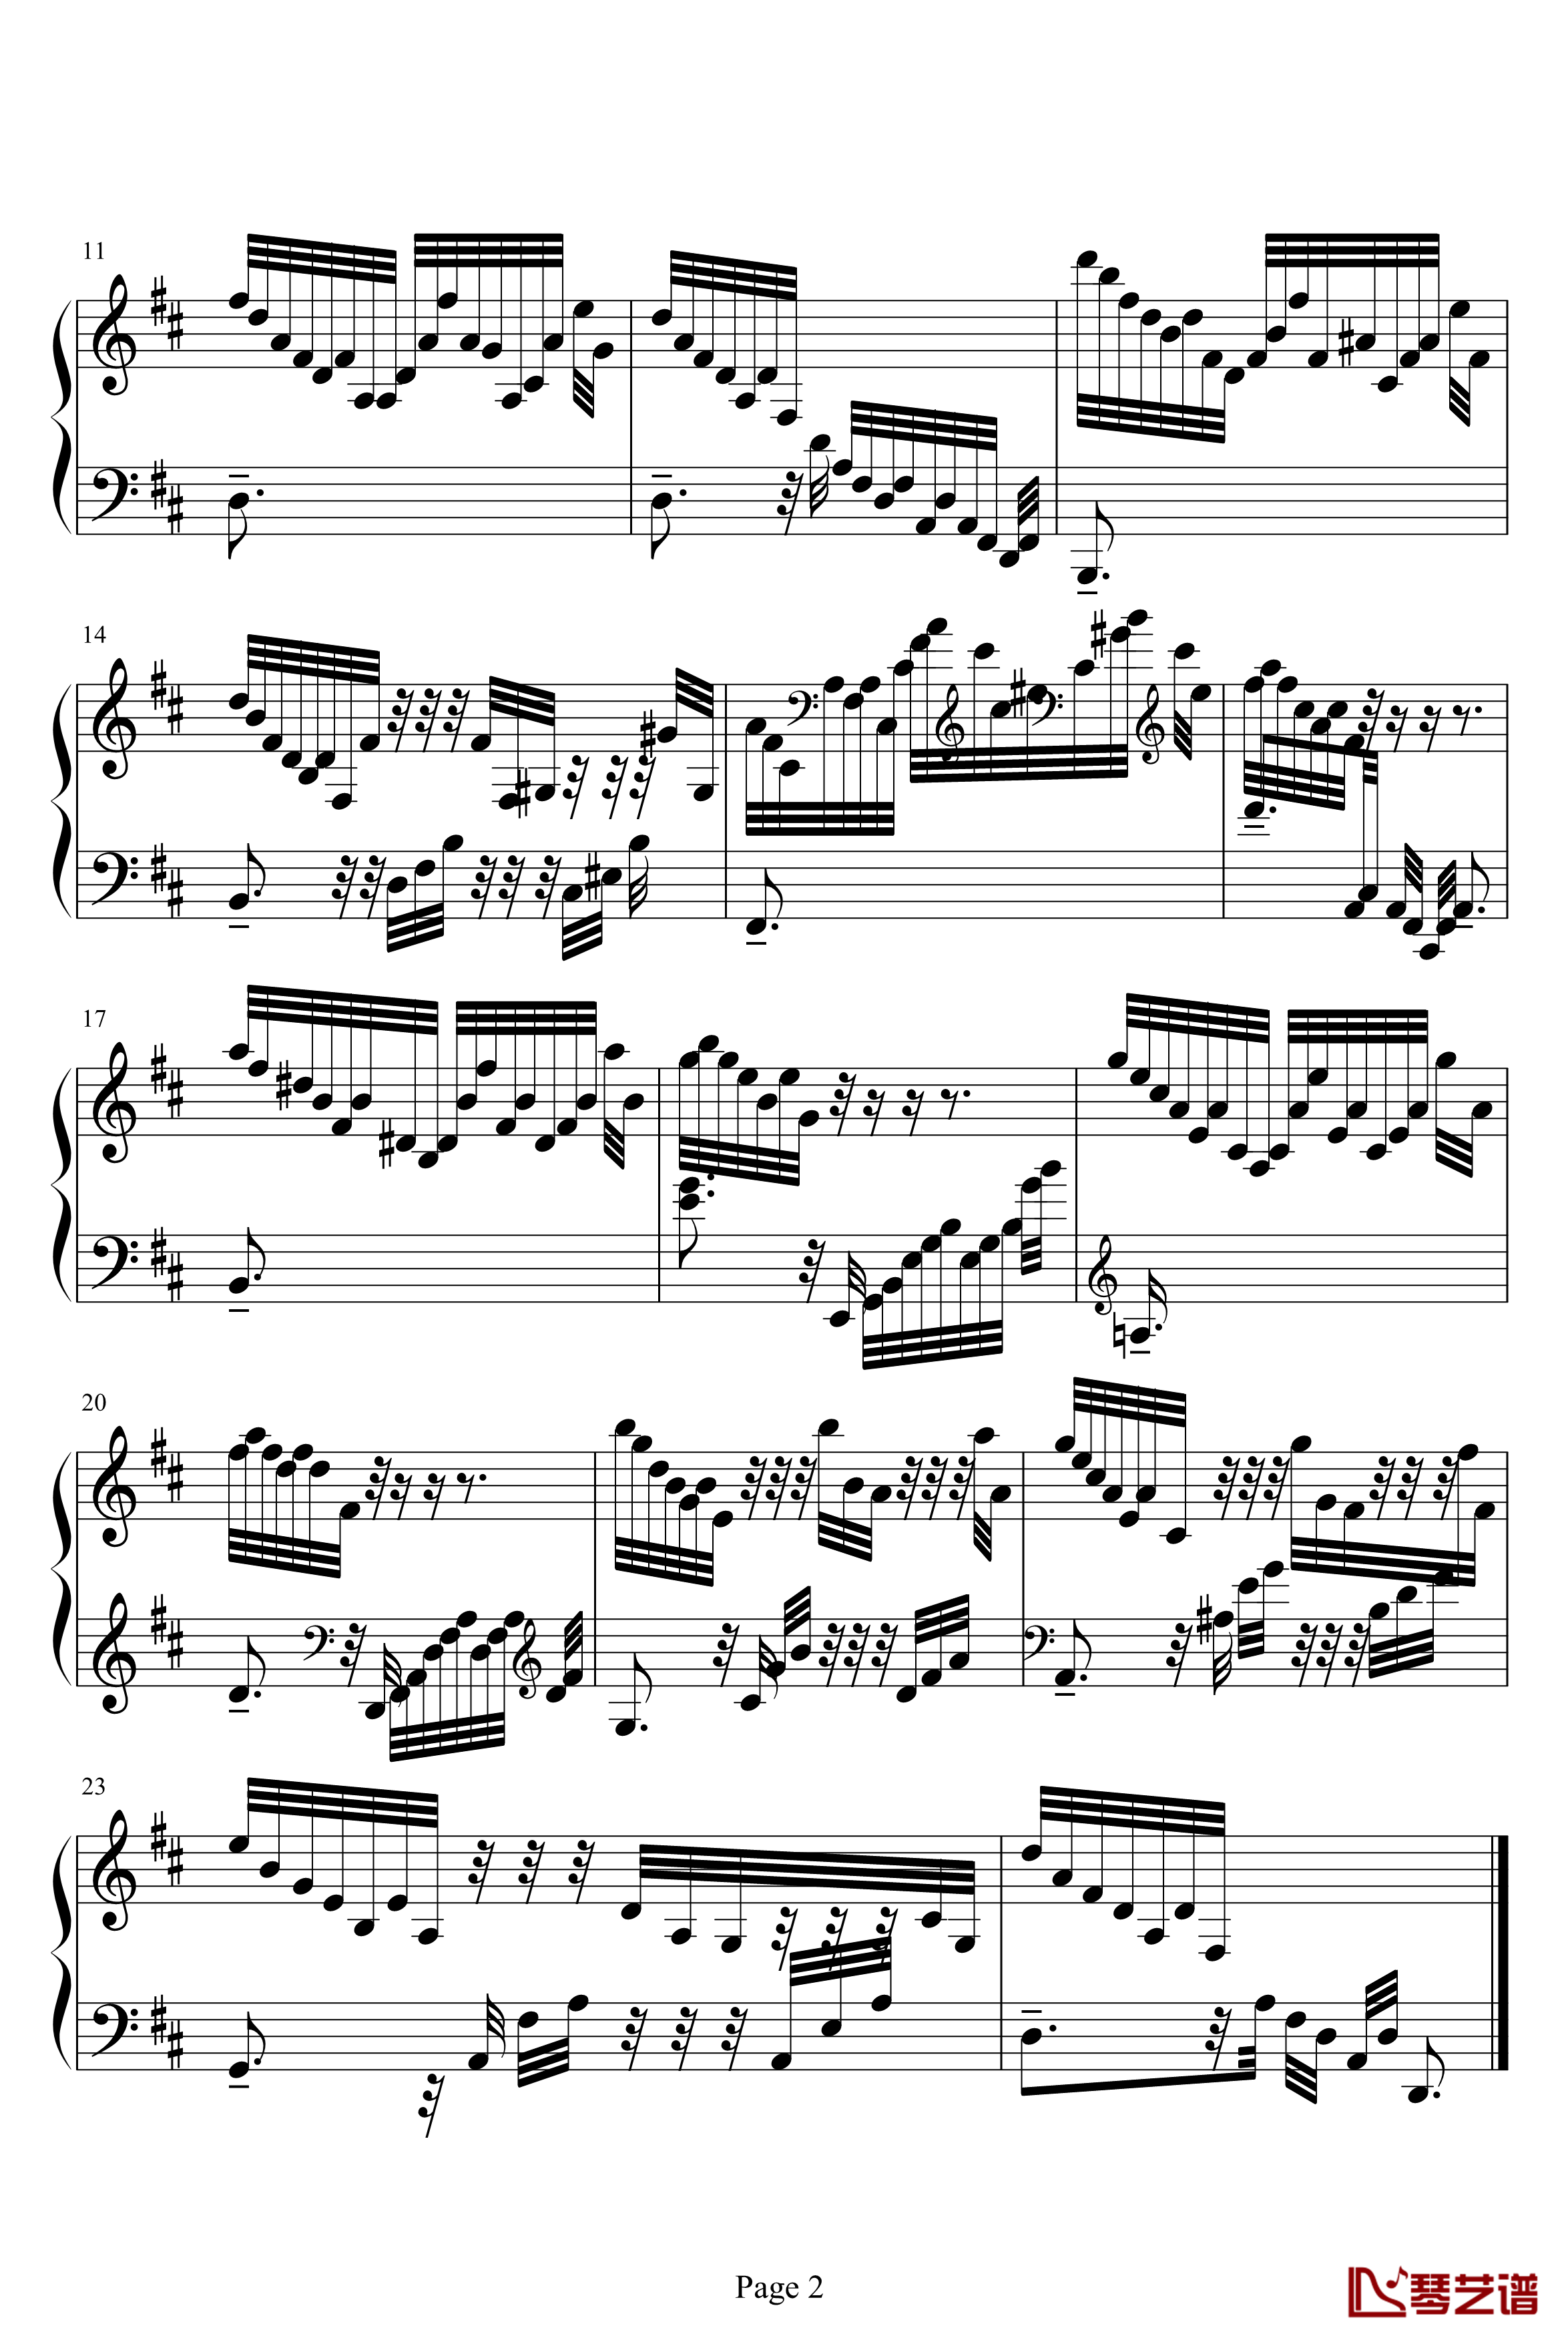 克拉莫练习曲钢琴谱-jonesoil上传版-克拉莫